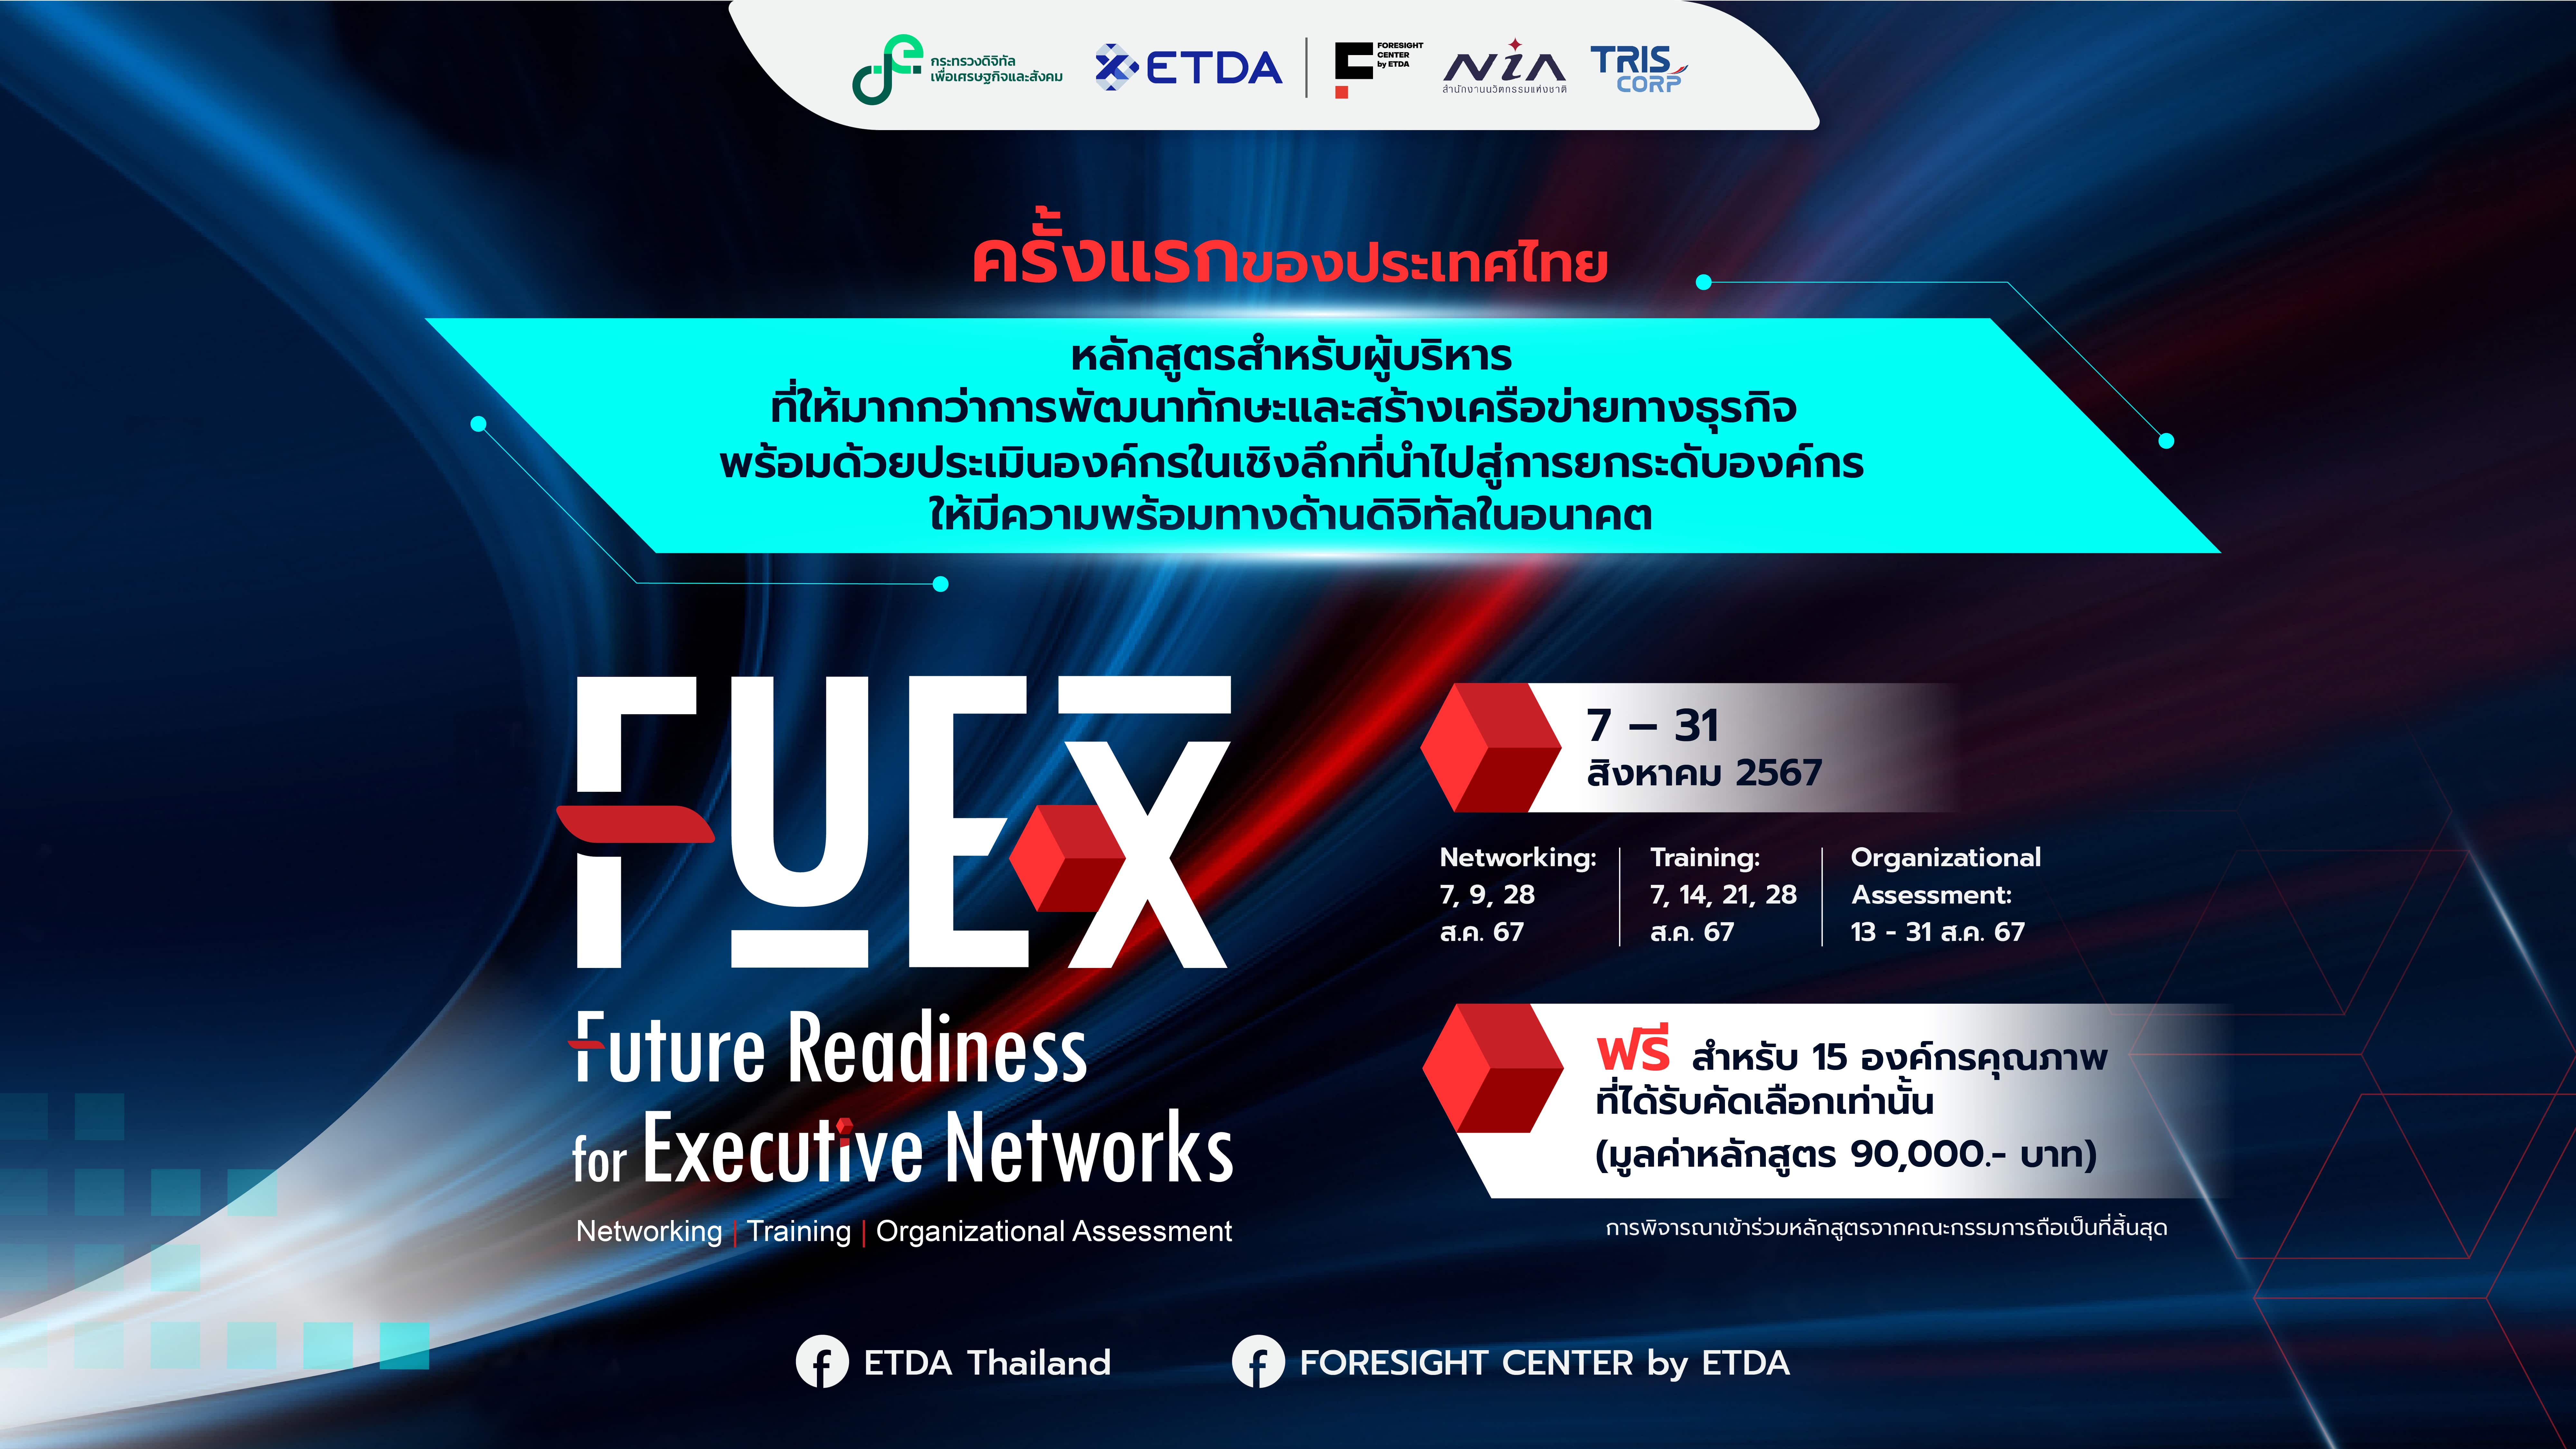 “หลักสูตร FuEx” เพื่อผู้บริหารองค์กรยุคใหม่ พร้อมก้าวล้ำสู่ความพร้อมทางอนาคตด้านดิจิทัล โดยศูนย์ Foresight Center by ETDA